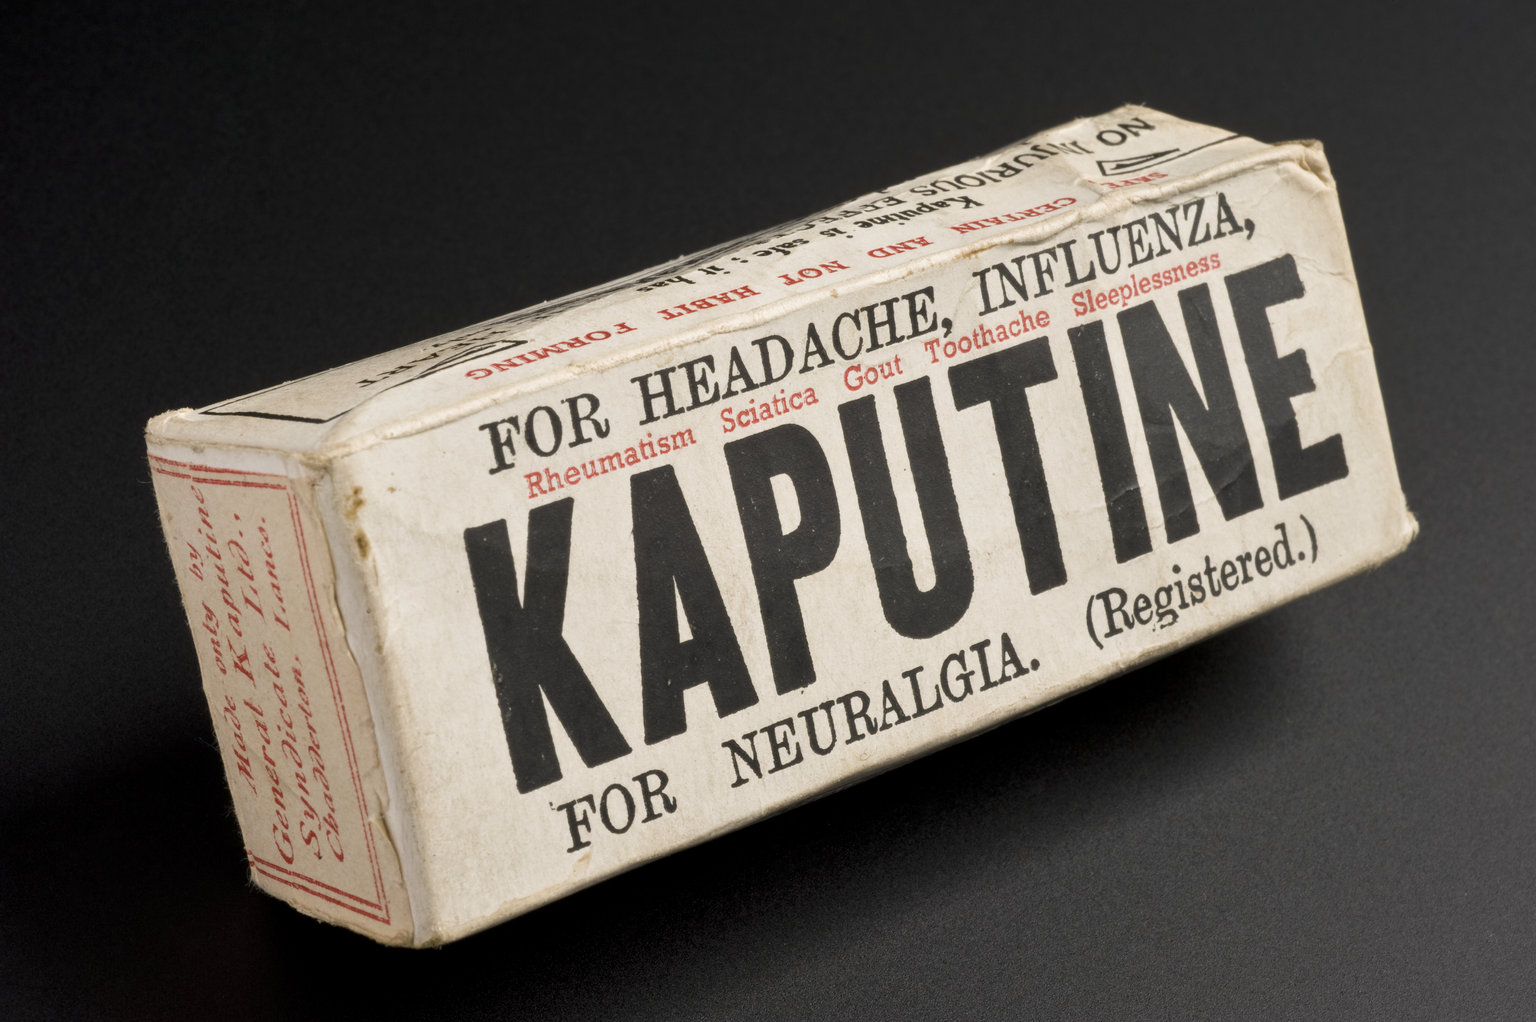 Box of Kaputine medicine, England, 1930-1950